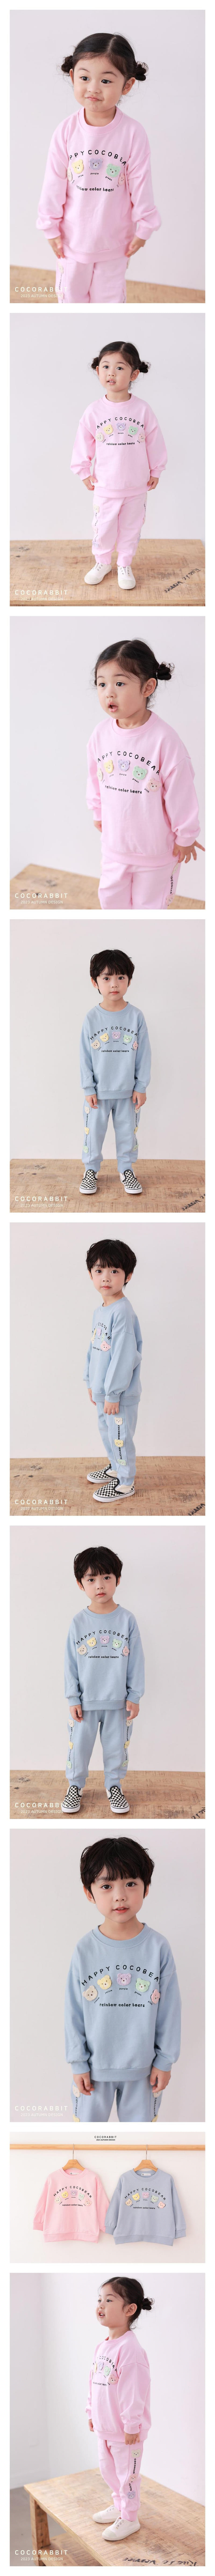 Coco Rabbit - Korean Children Fashion - #todddlerfashion - 5 Bear Sweatshirt